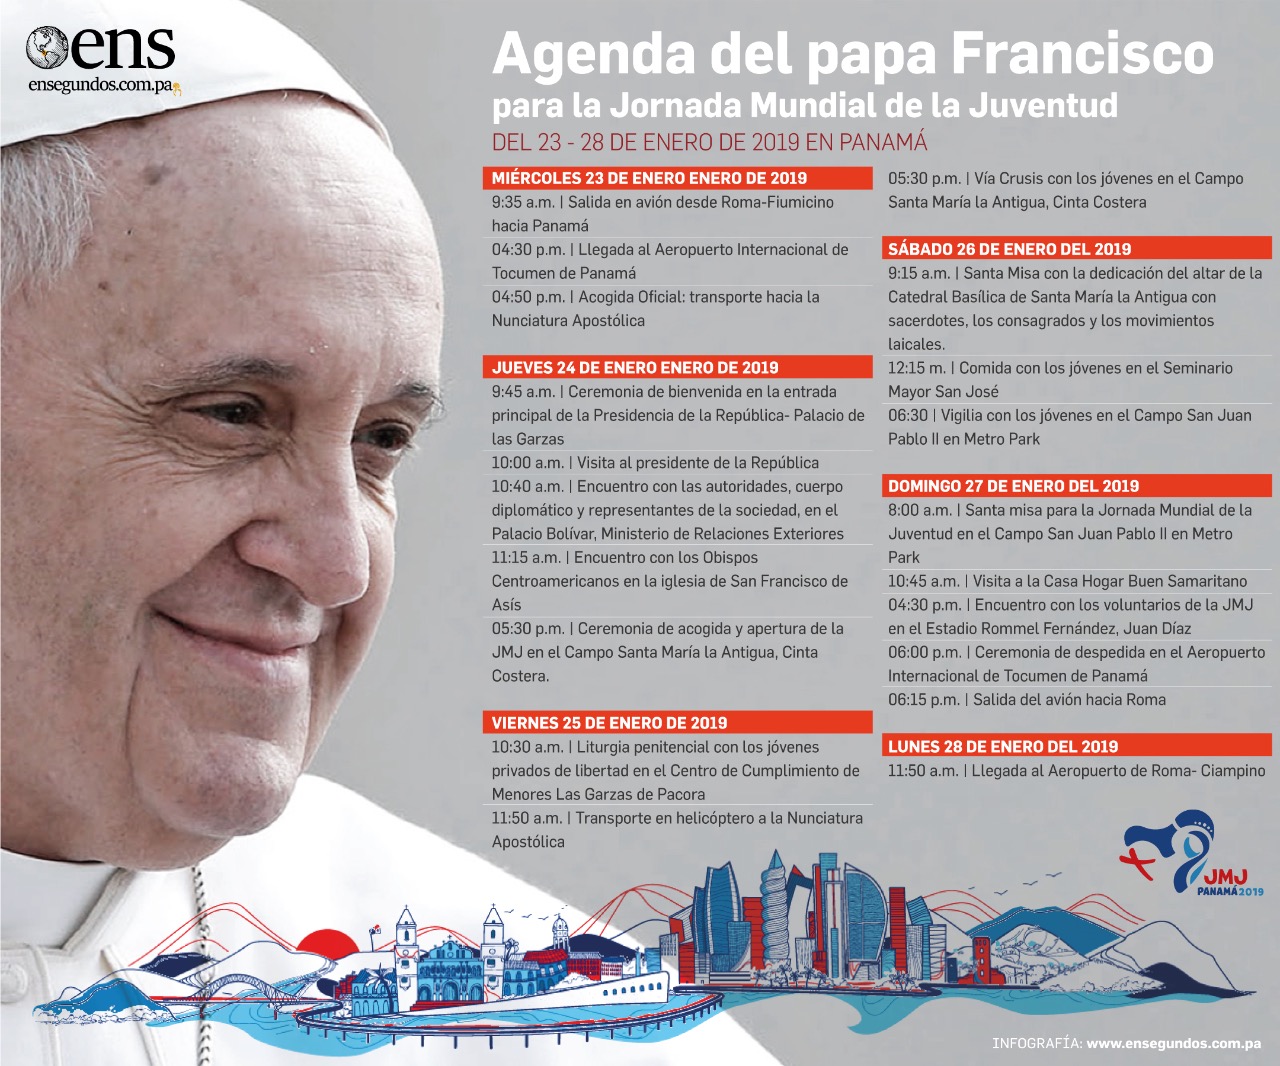 Revelan primeros detalles de la agenda del Papa Francisco en la JMJ